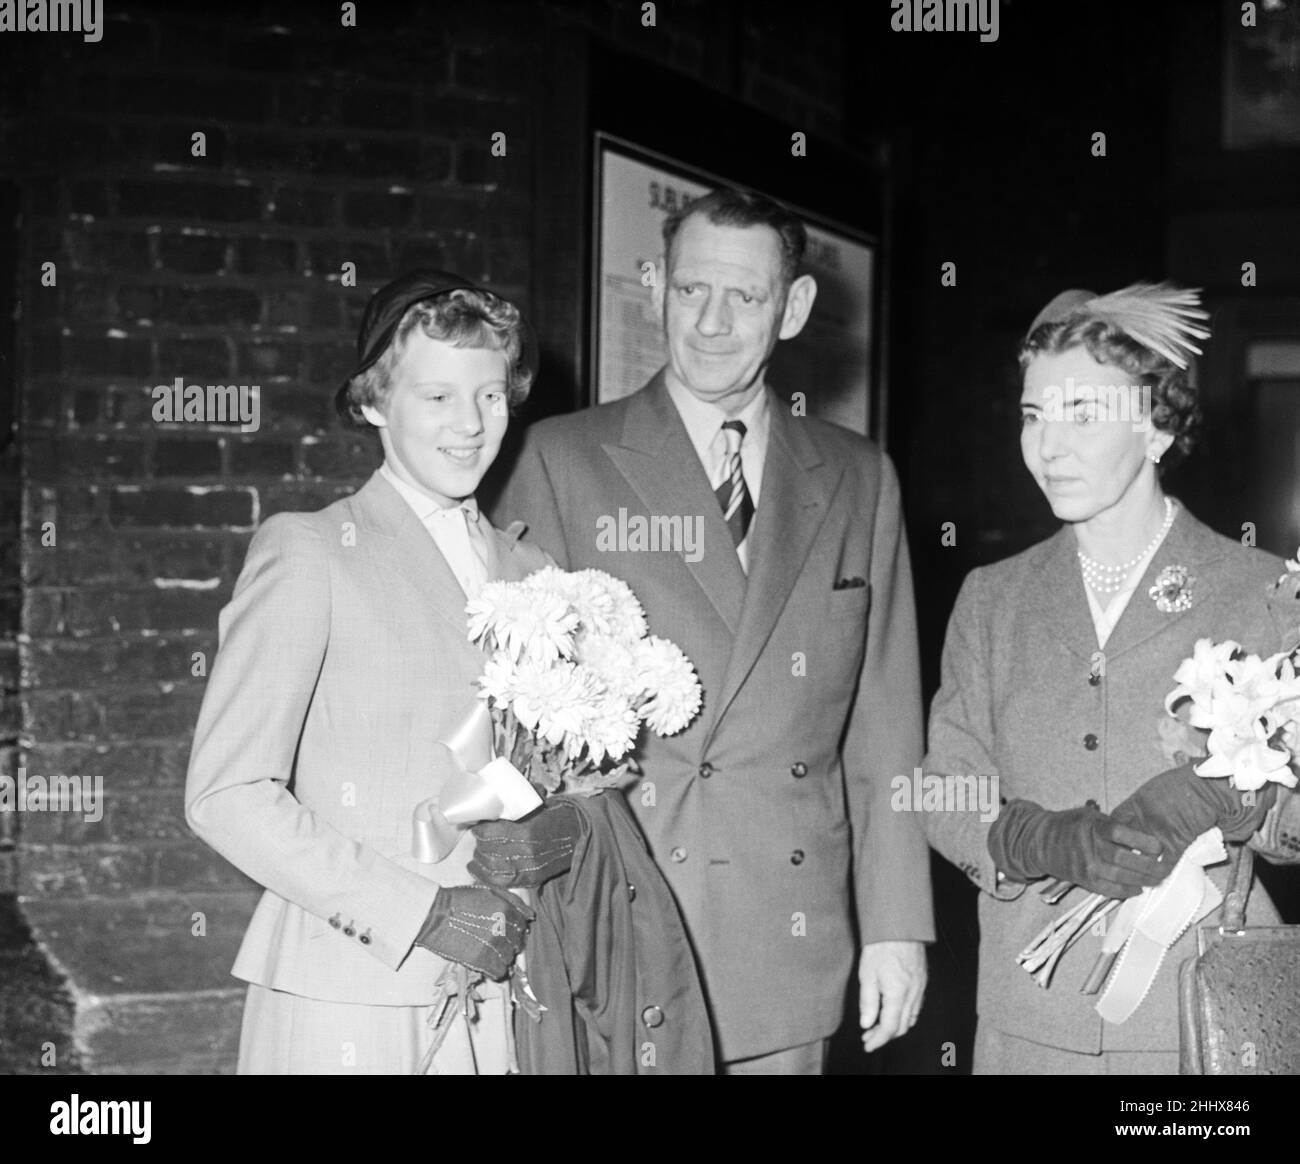 Principessa Margrethe di Danimarca, quindicenne, raffigurata con suo padre, re Frederik, e madre regina Ingrid di Dernmark. La principessa Margrethe, erede del trono danese, diventerà questa settimana un allievo in una scuola privata nel Berkshire. 18th settembre 1955. Foto Stock